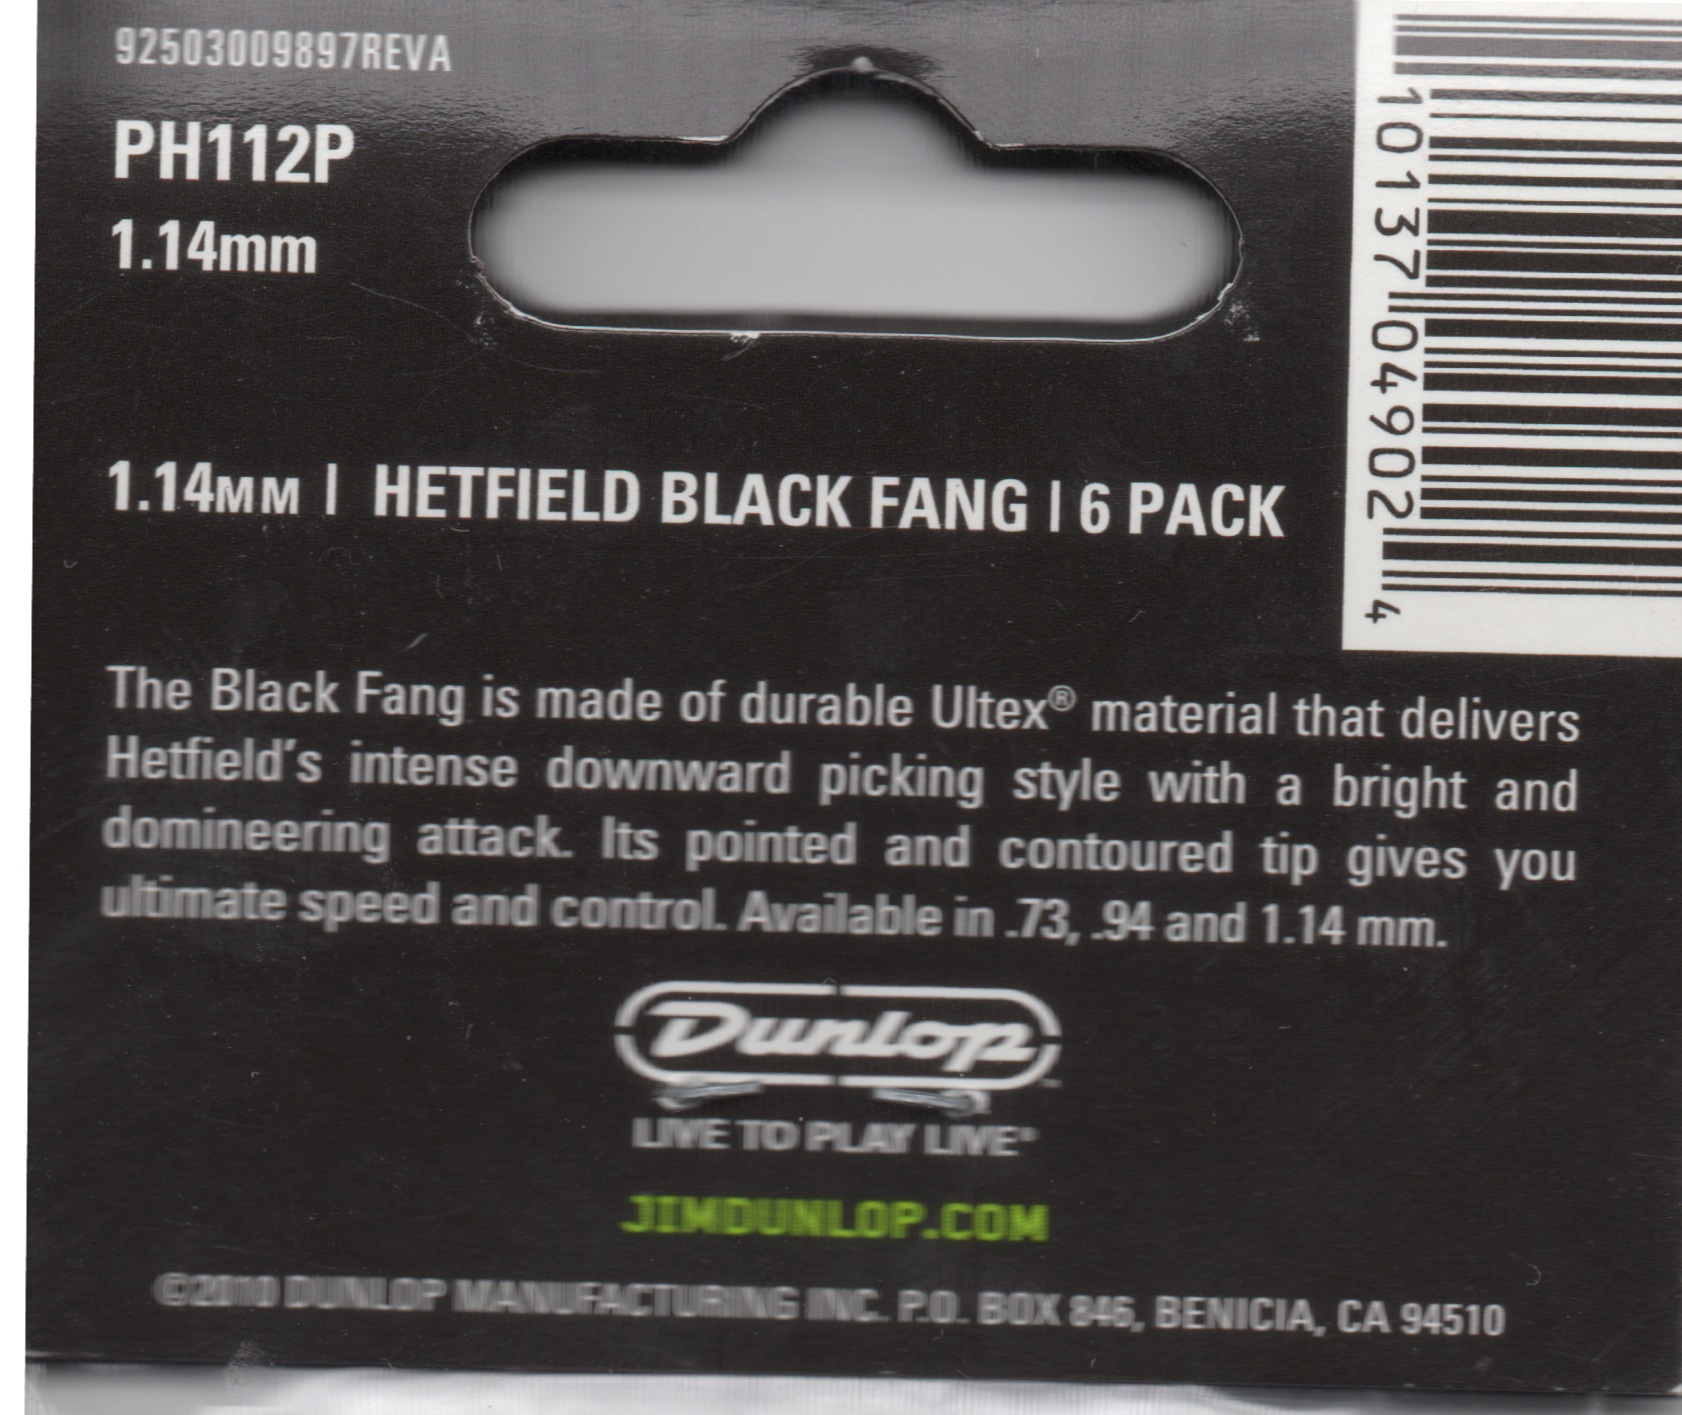 Black Fang Bag 1.14mm Bag Back